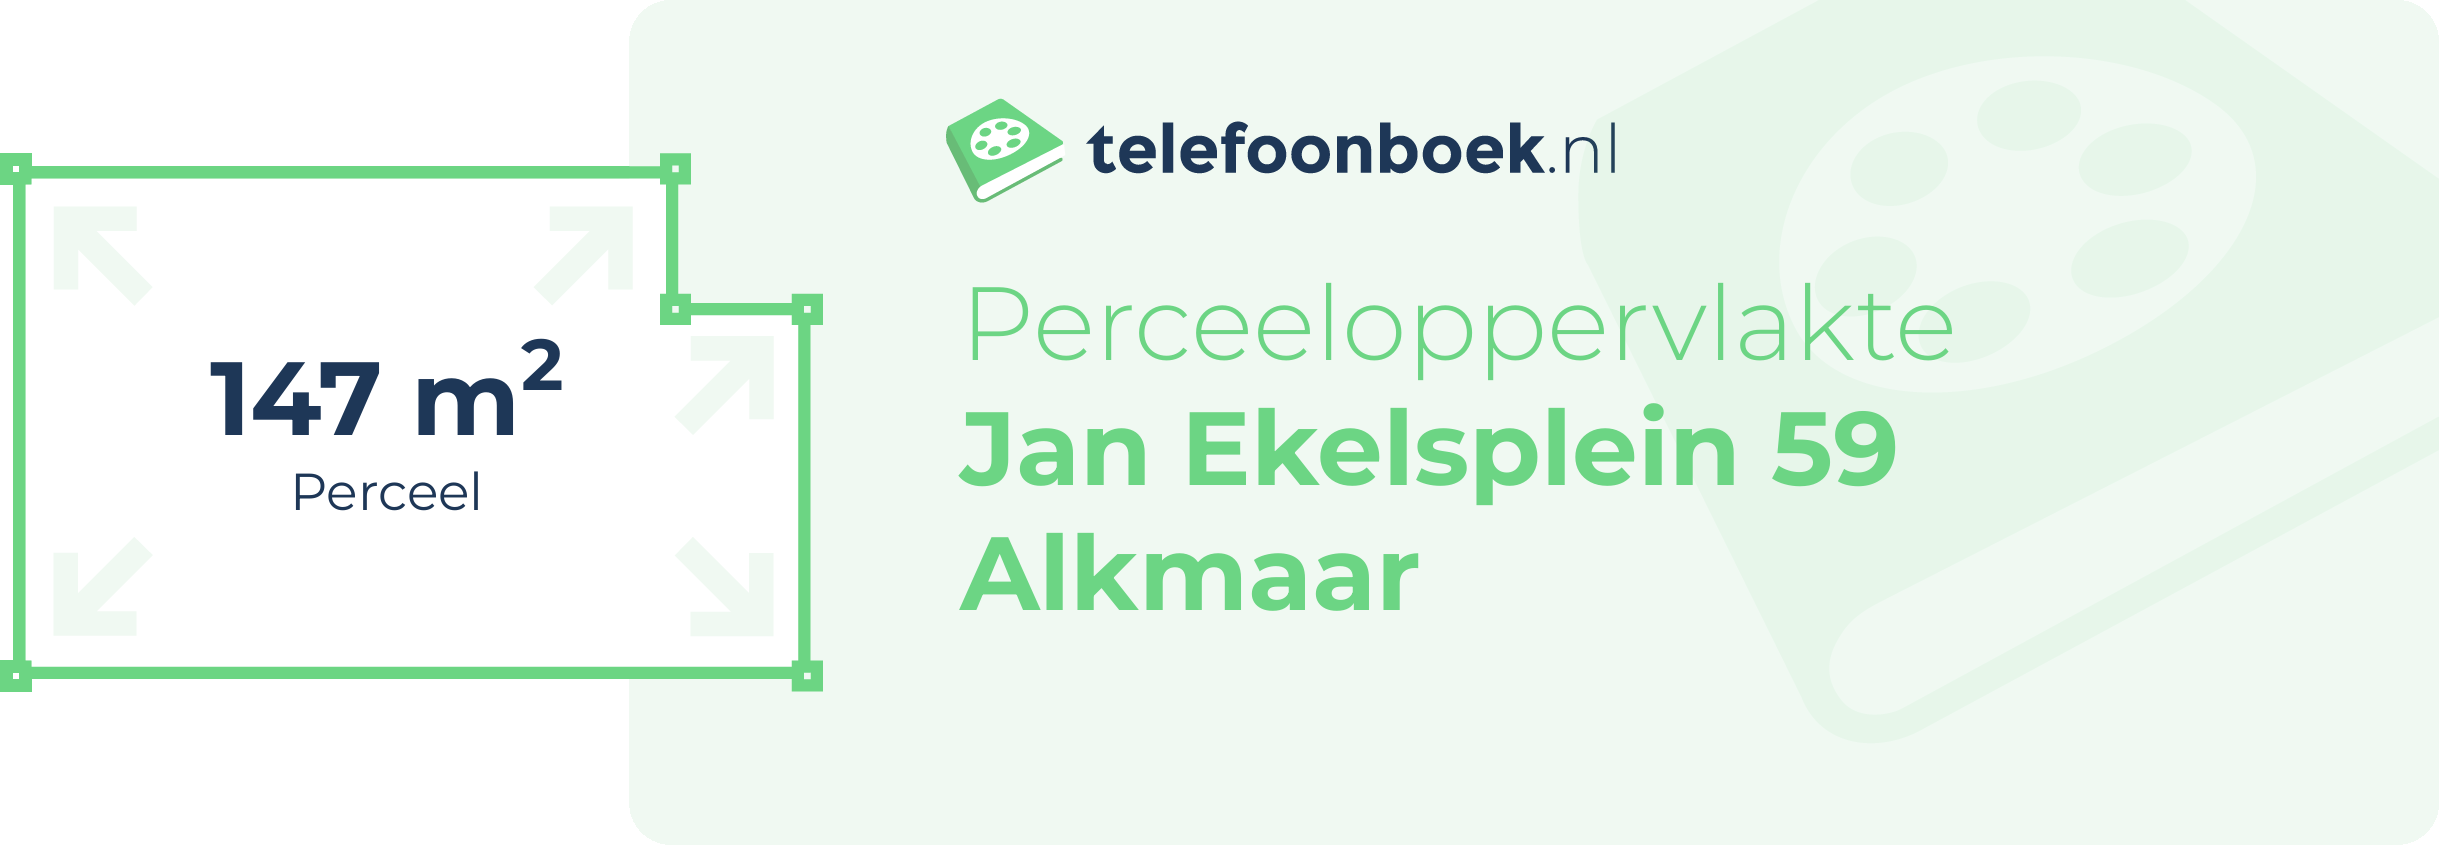 Perceeloppervlakte Jan Ekelsplein 59 Alkmaar